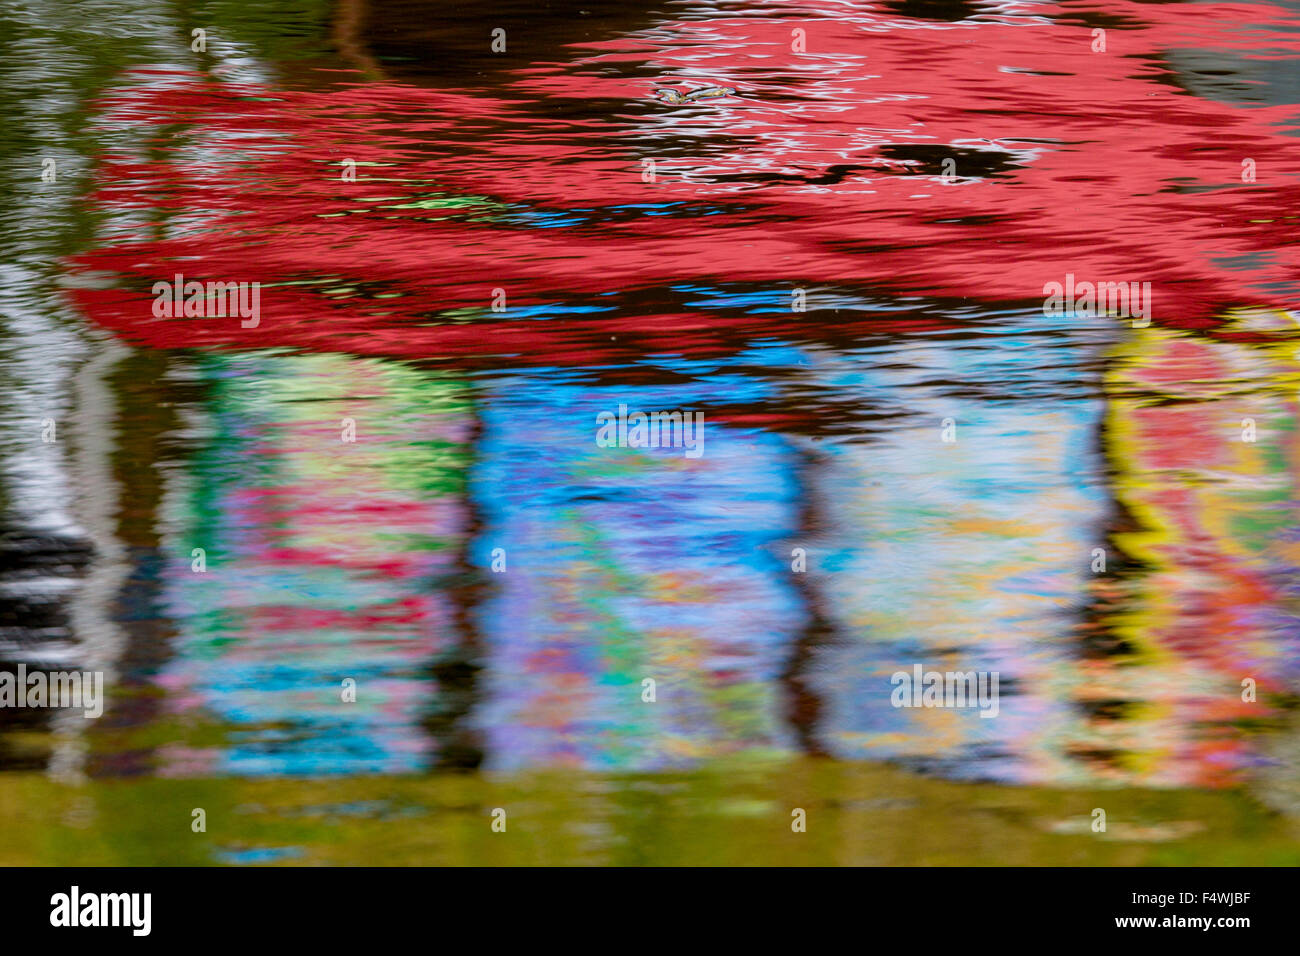 Farbige Reflexe in Wasser, bunt, rot, blau, abstrakt, lebendige, Ainbow, Kaleidoskop, Hintergrund Stockfoto